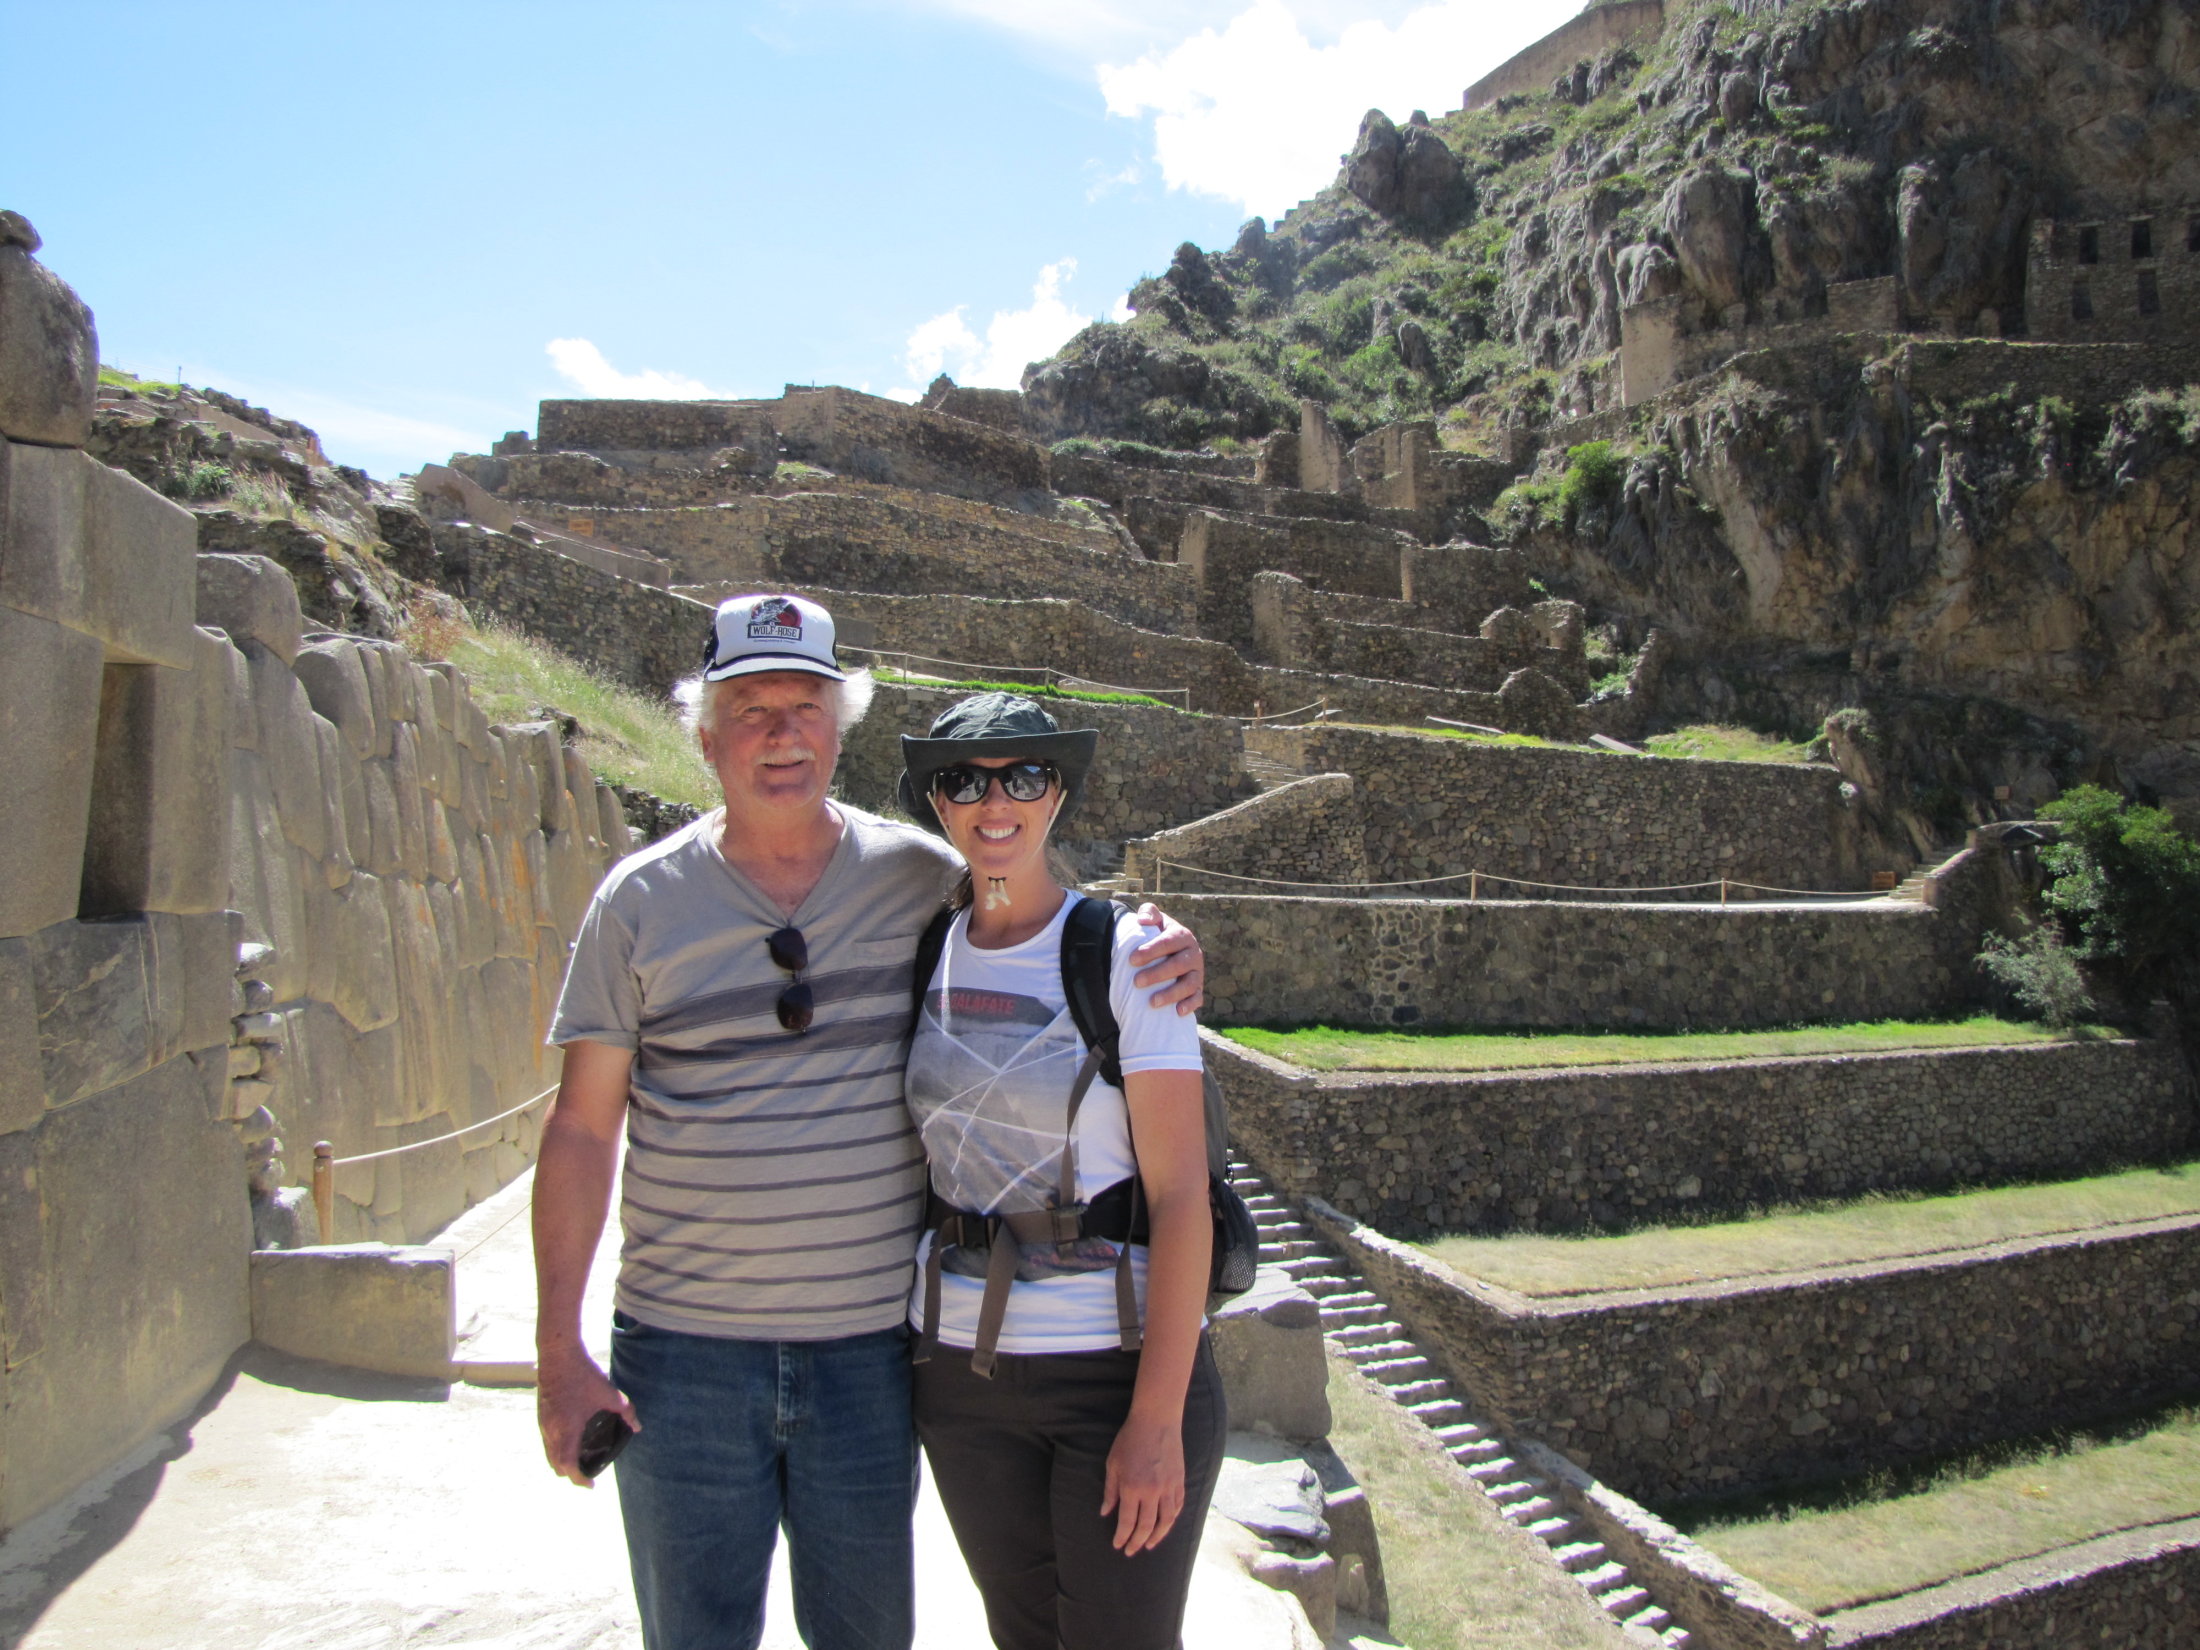 Shannon and her dad at Ollantaytambo ruins